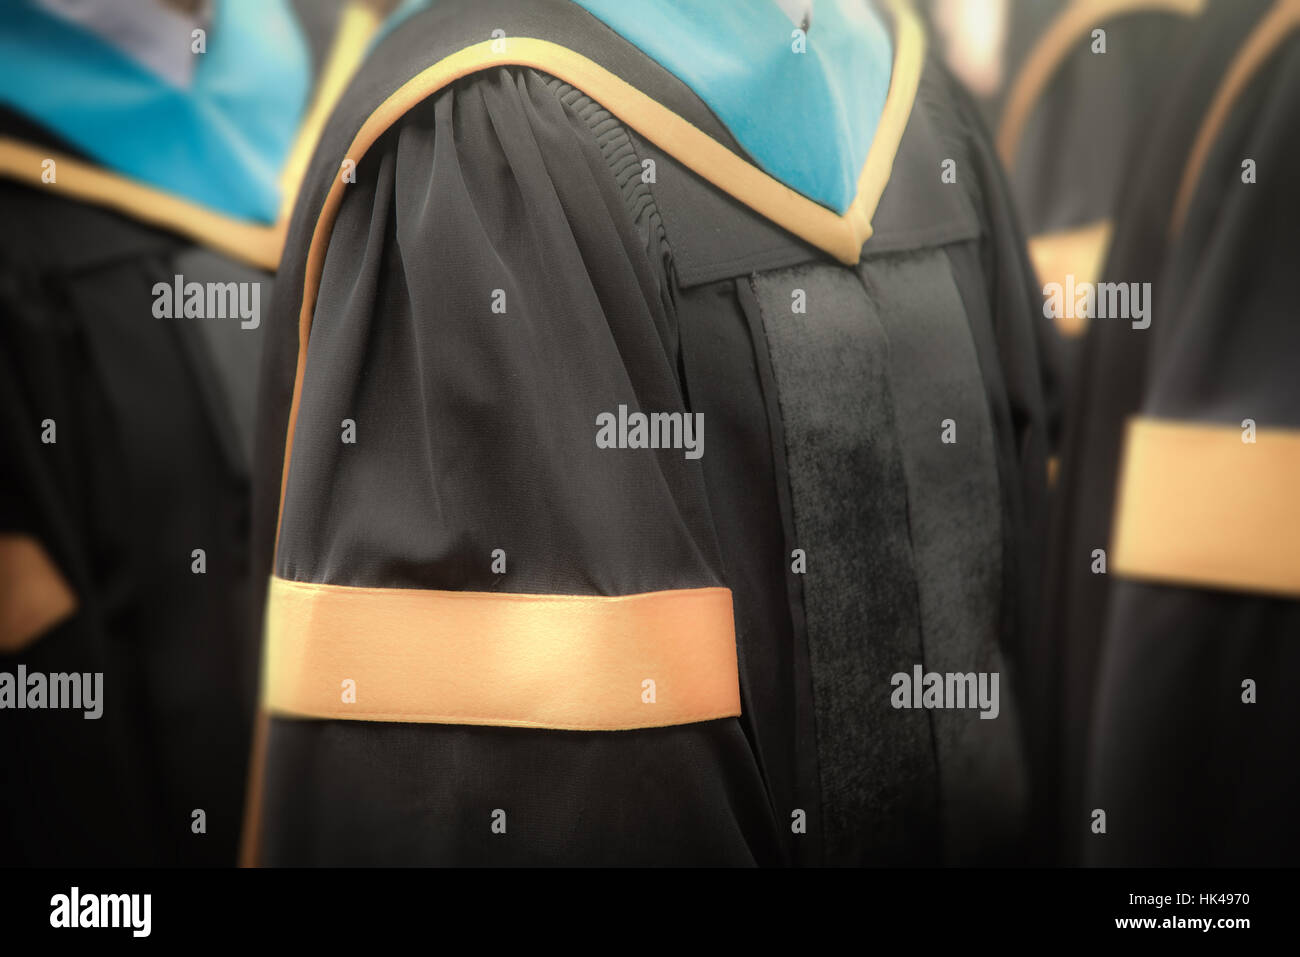 Selektiven Fokus auf Kleider der Bachelor-Abschluss Absolventen in Beginn Graduierung Zeremonie Zeile, Metapher Bildung, Erfolg, Konzept, Hintergrund Stockfoto